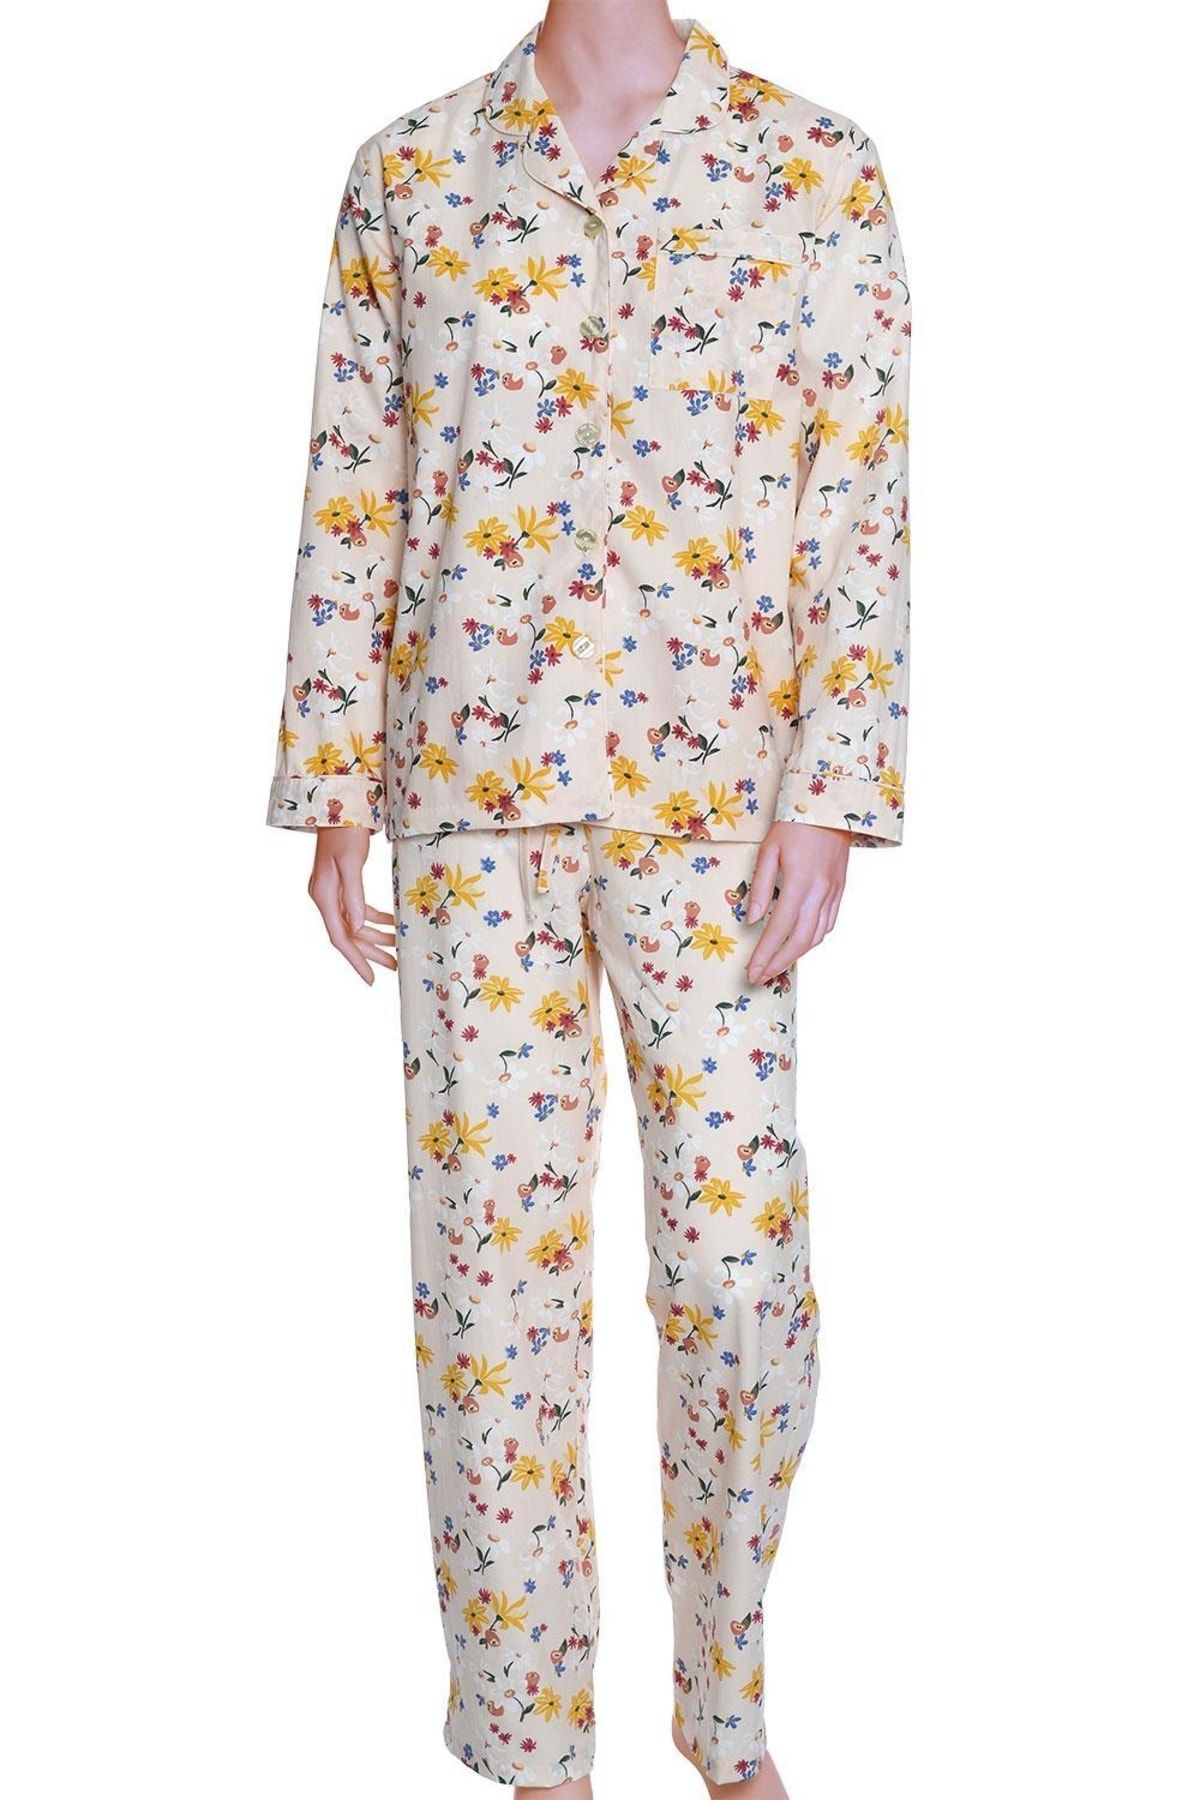 TheDon Poplin Kadın Pijama Takımı Desen 43